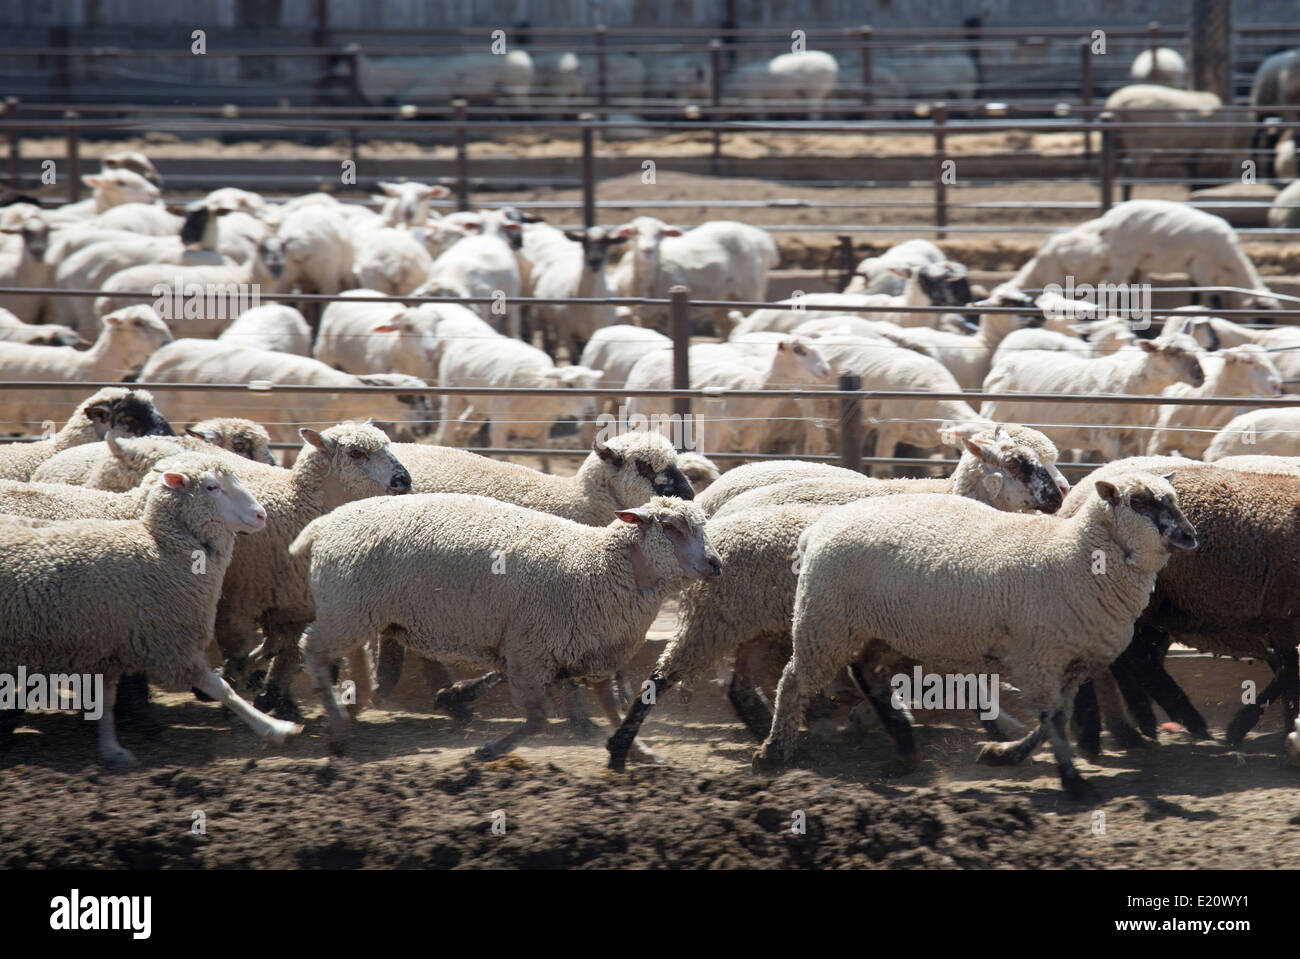 Greeley, Colorado - Sheep in a feedlot. Stock Photo